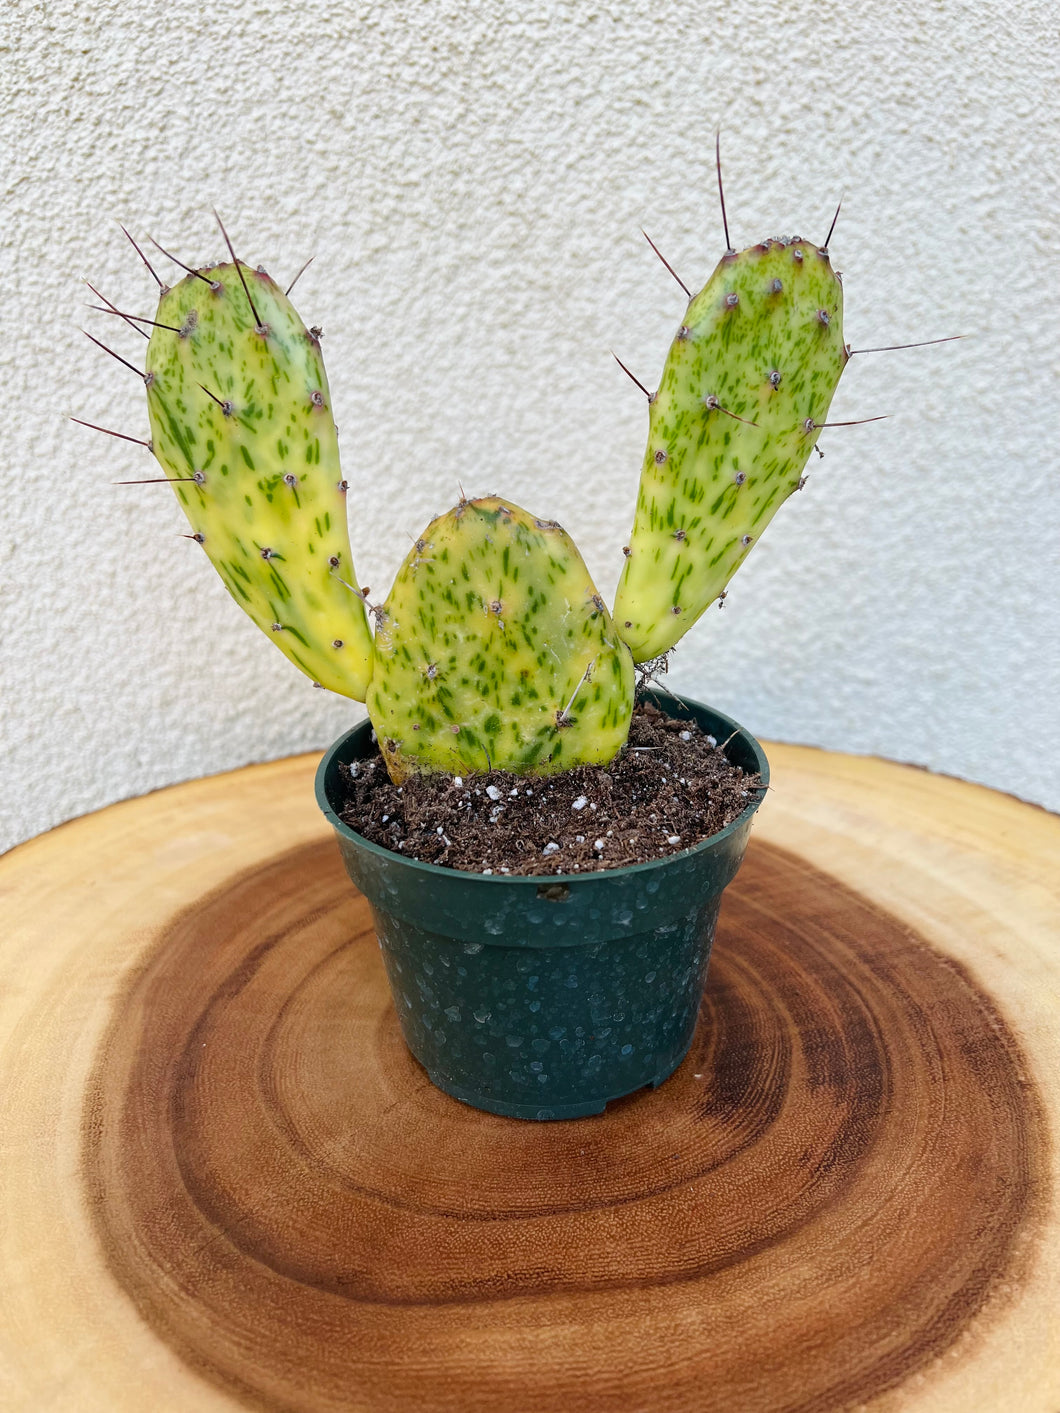 Opuntia Sunburst varagata, Cactus